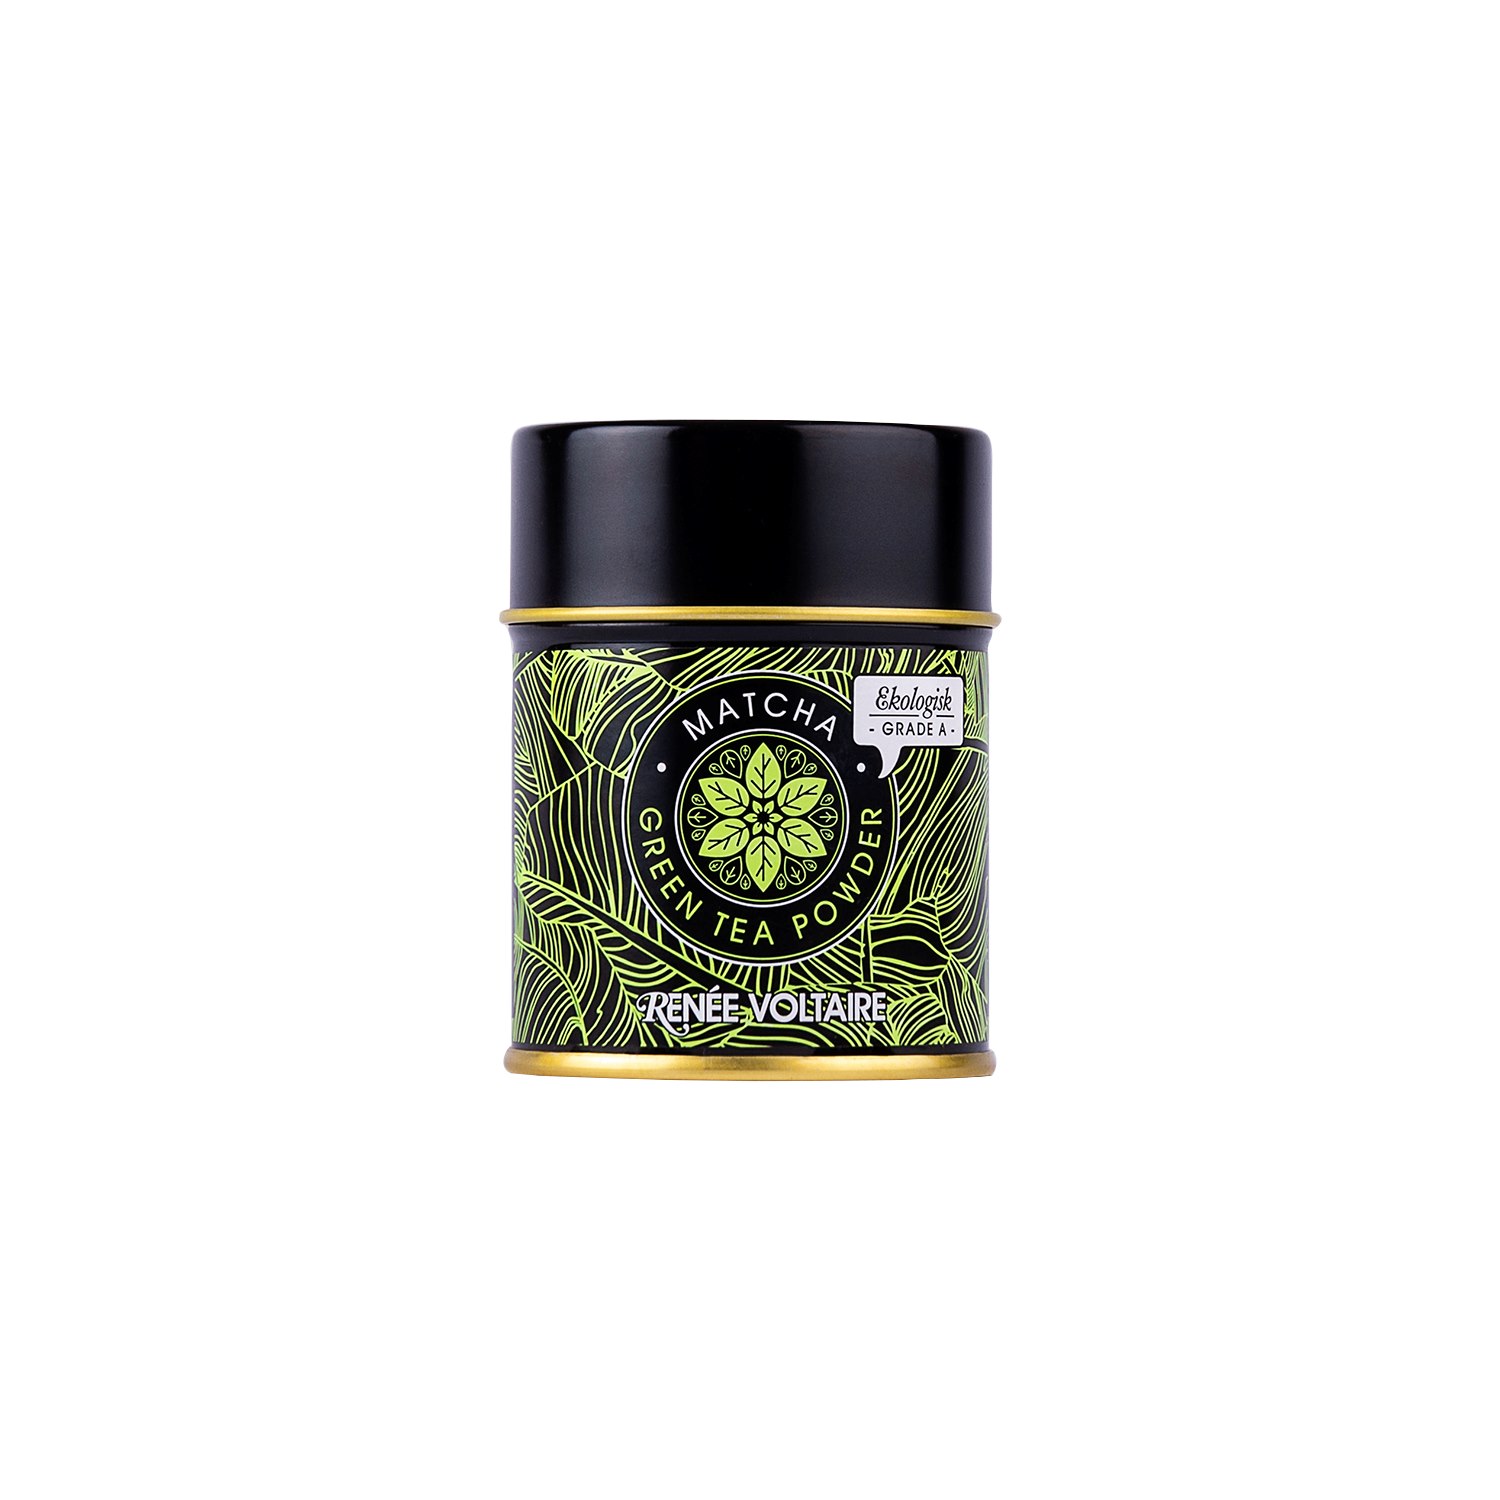 Renee Voltaire Ekologisk Matcha - Green Tea Powder (grade A), 30 g